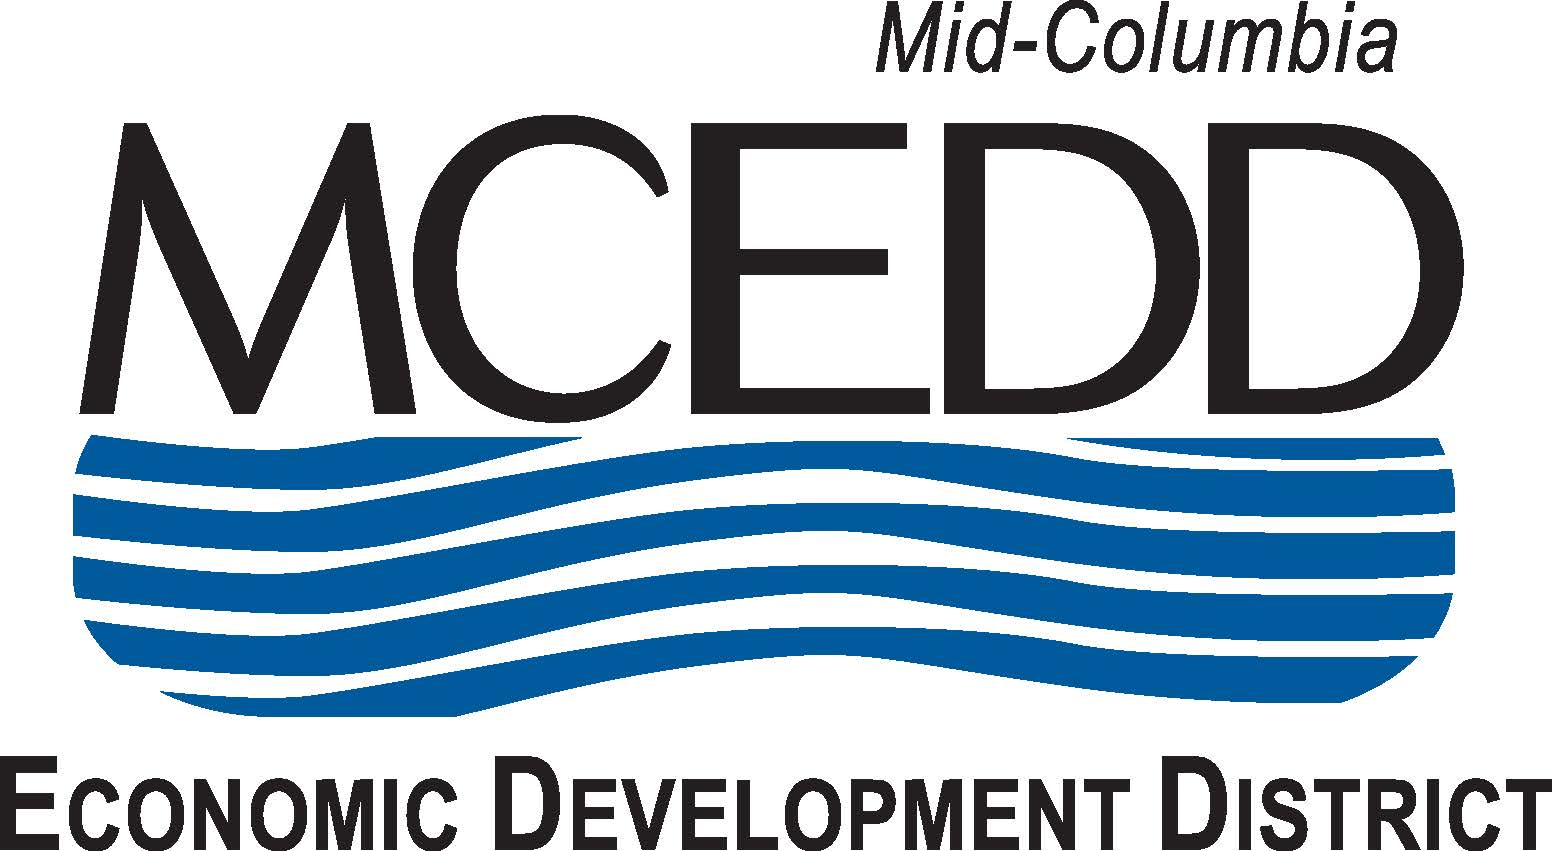 MCEDD logo